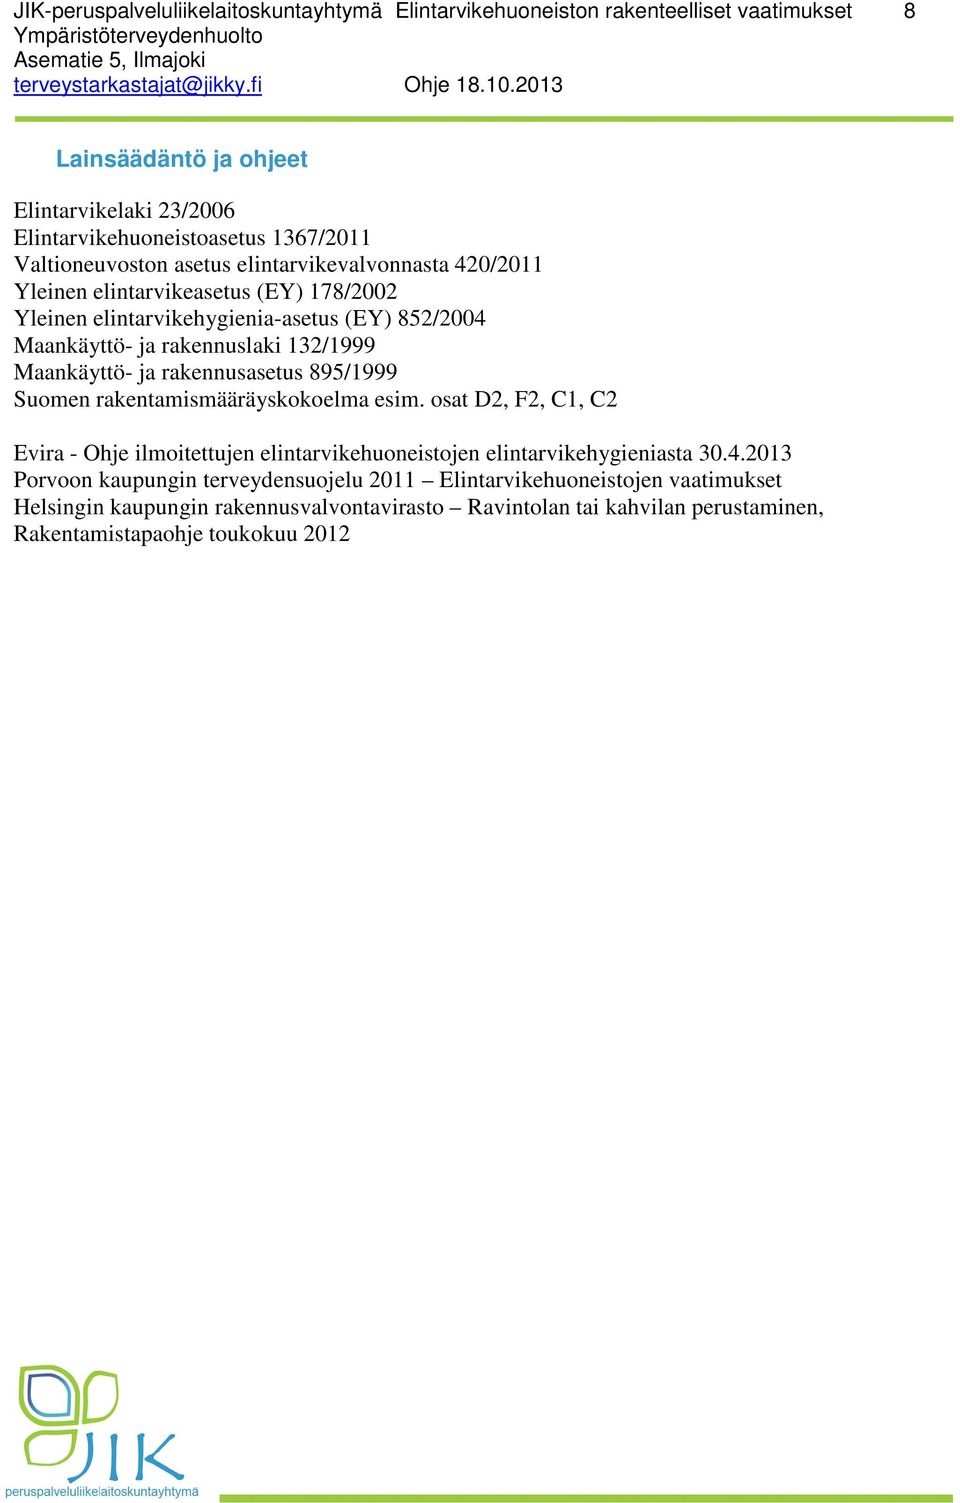 Maankäyttö- ja rakennusasetus 895/1999 Suomen rakentamismääräyskokoelma esim. osat D2, F2, C1, C2 Evira - Ohje ilmoitettujen elintarvikehuoneistojen elintarvikehygieniasta 30.4.